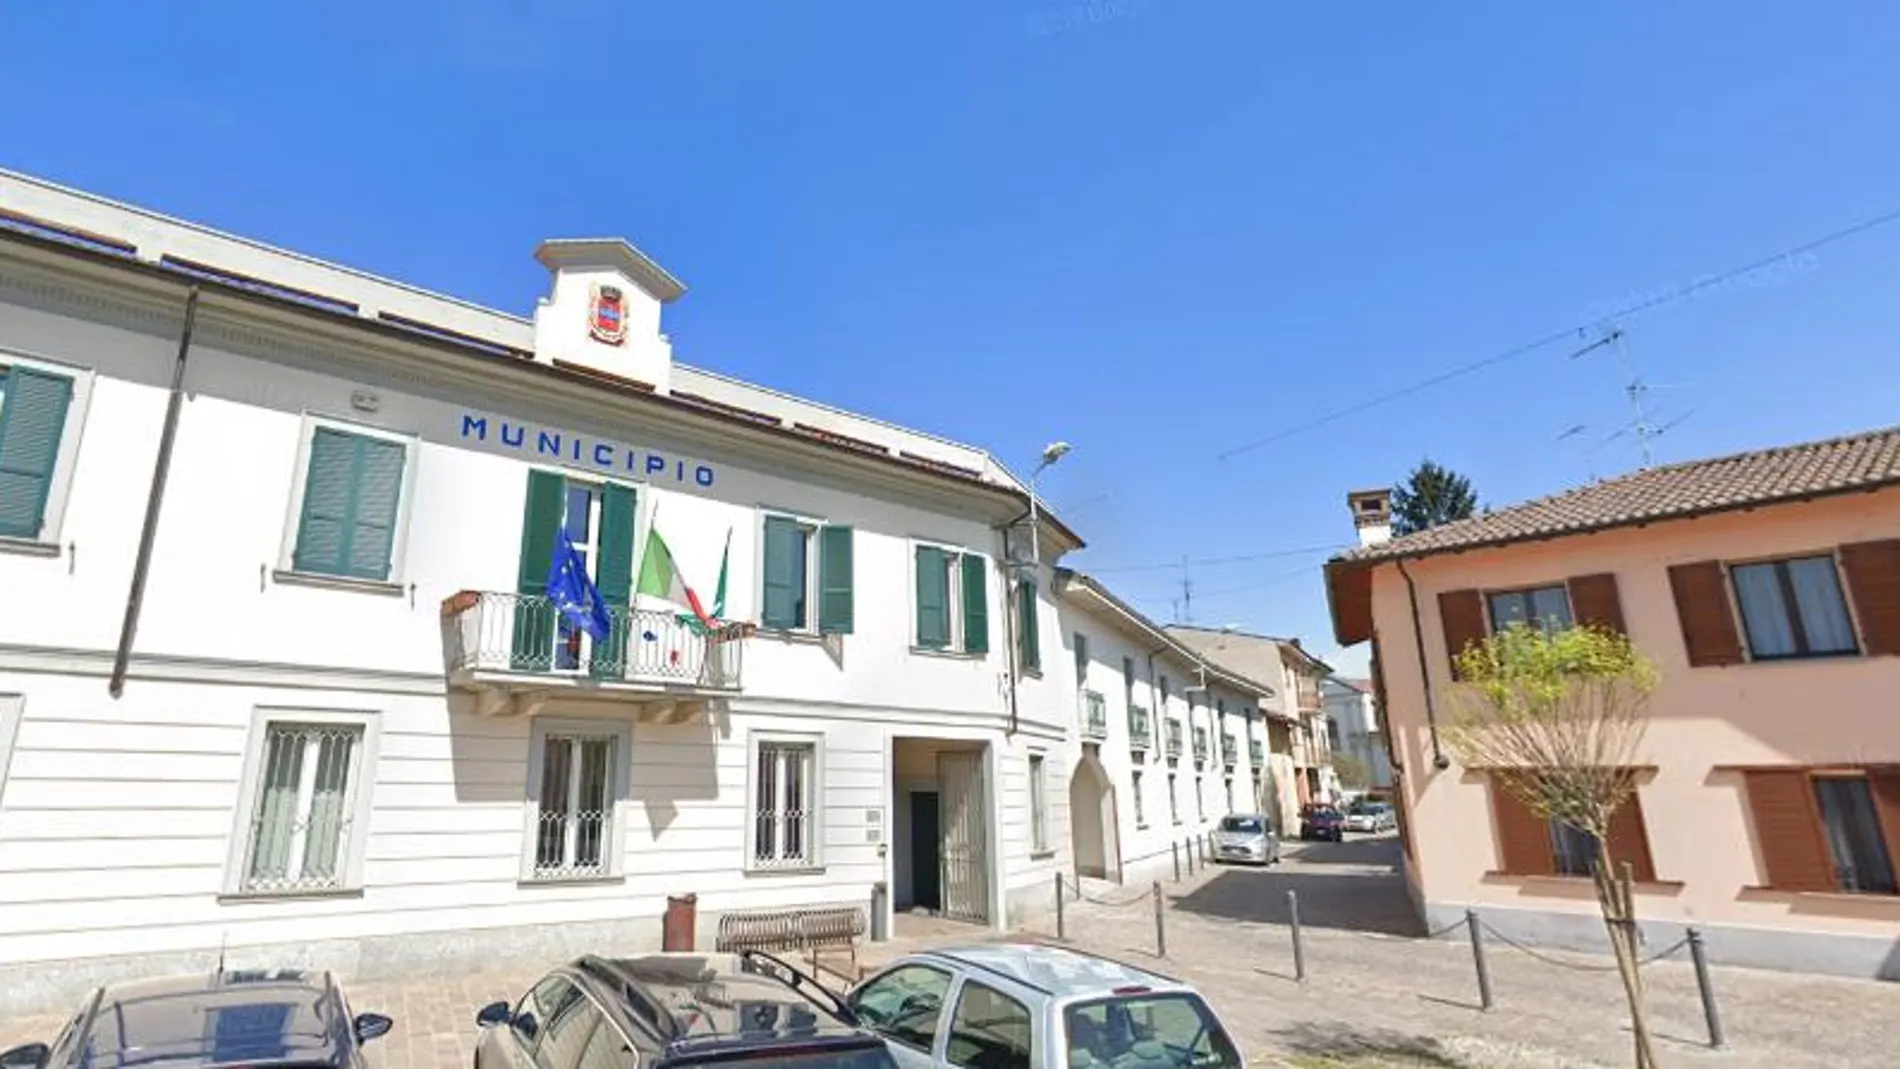 Imagen del ayuntamiento de la localidad italiana